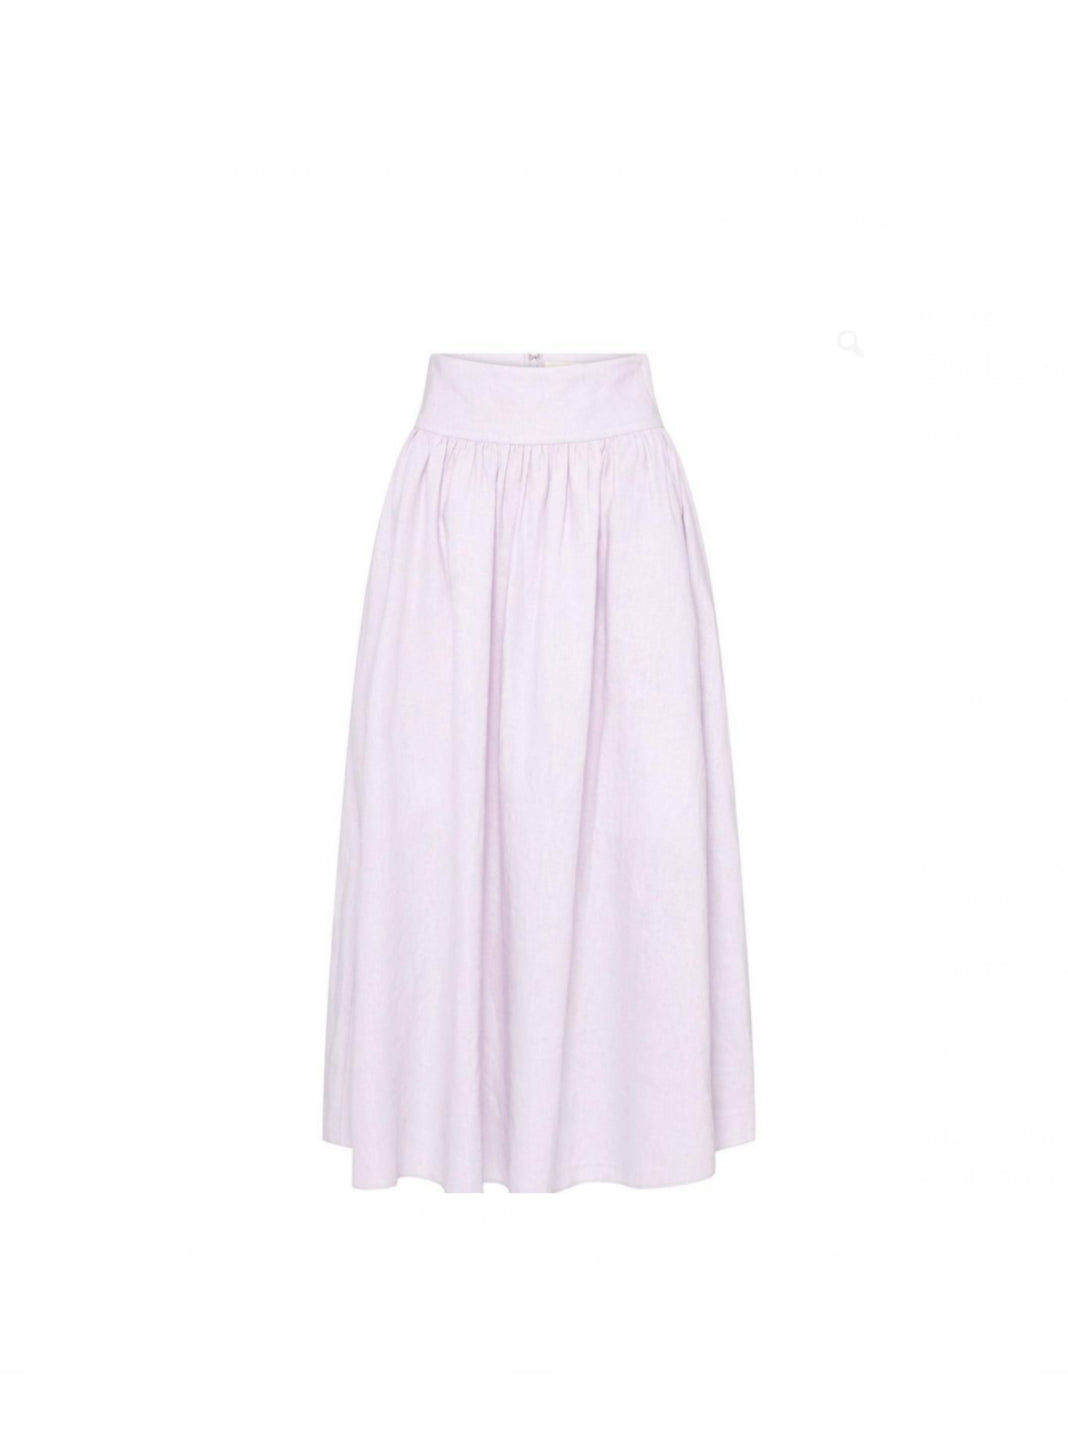 Posse Lavender Linen Skirt - nwt